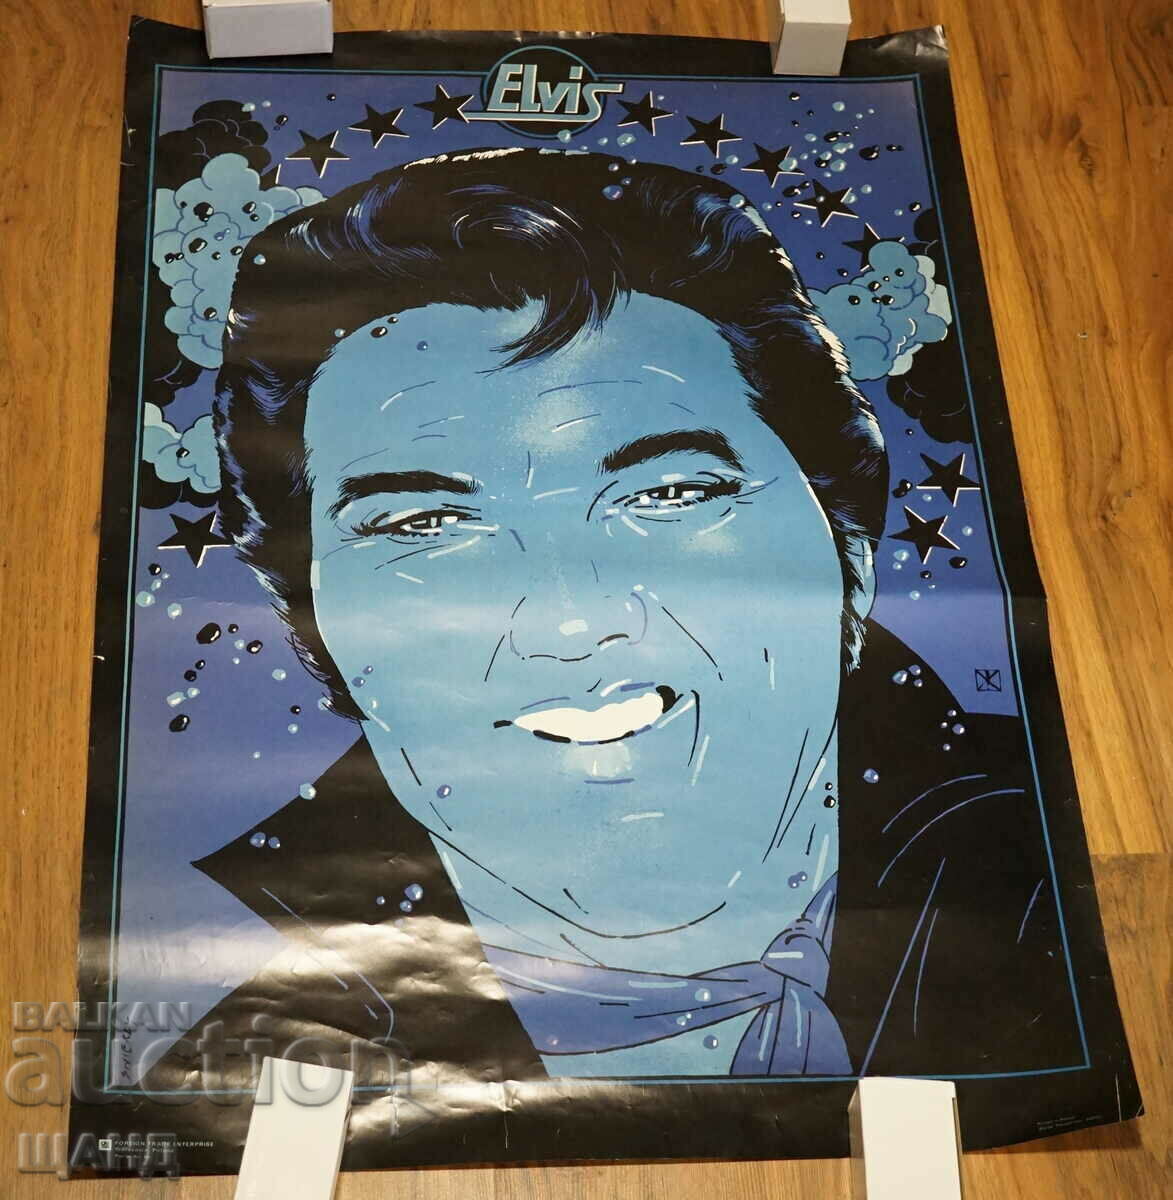 1977 Original Vintage Polish Elvis Presley Pop Art Poster